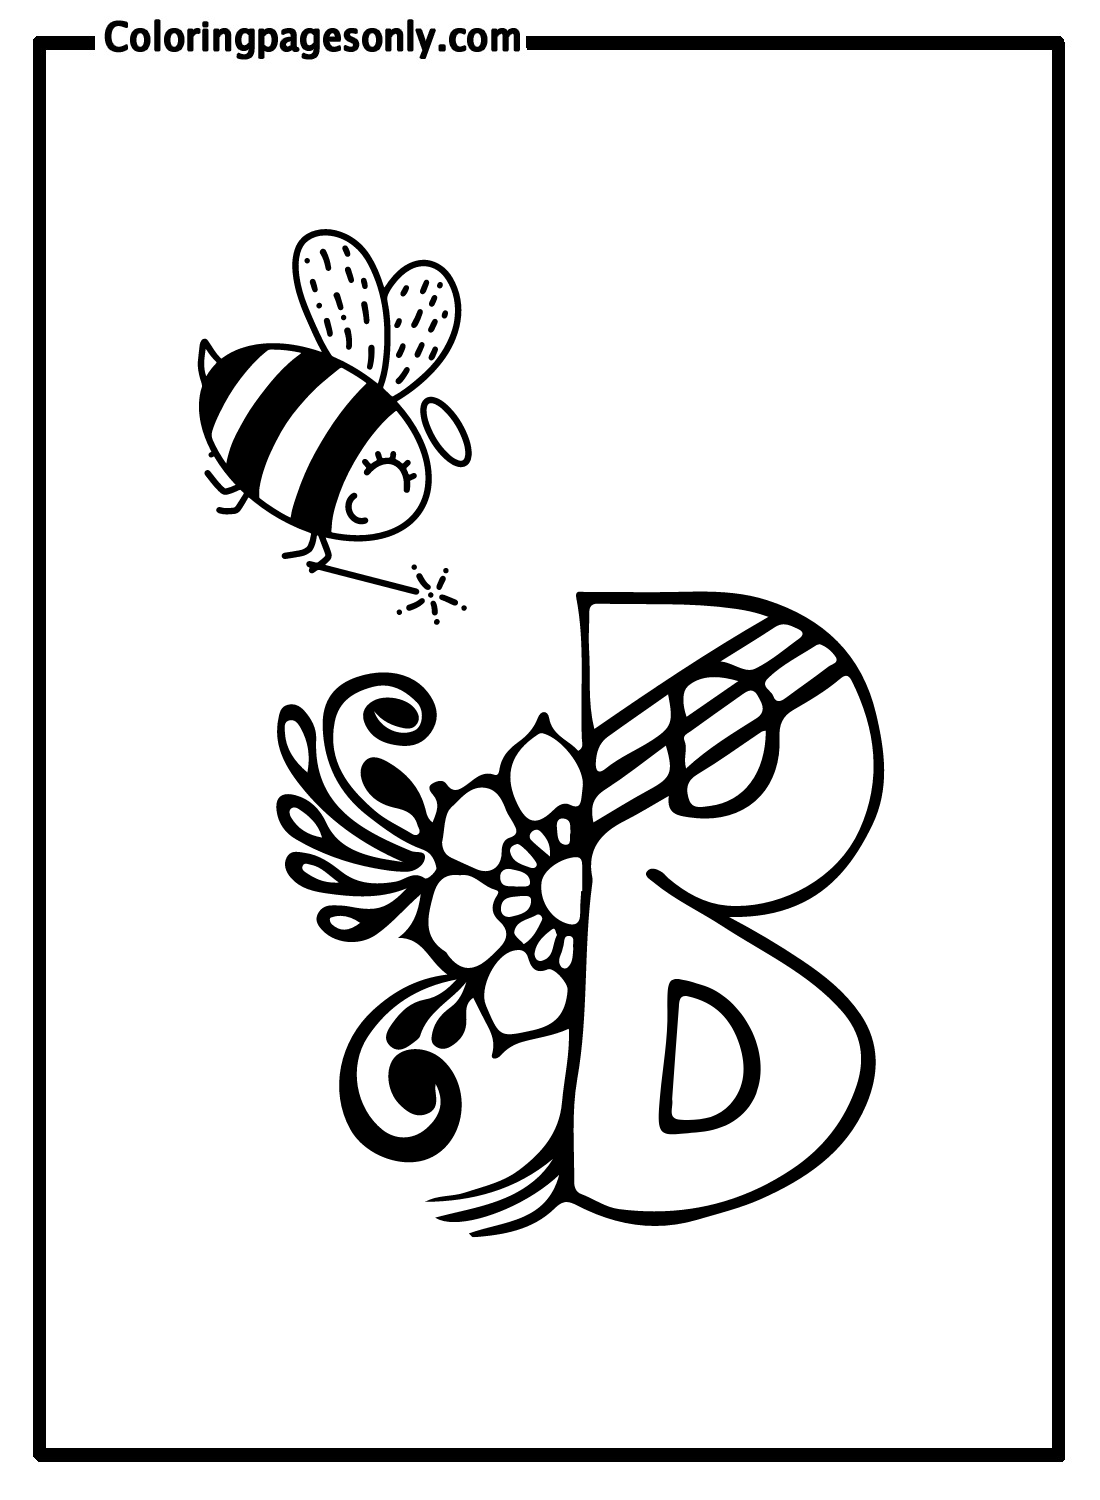 可爱的蜜蜂与字母 B 中的字母 B